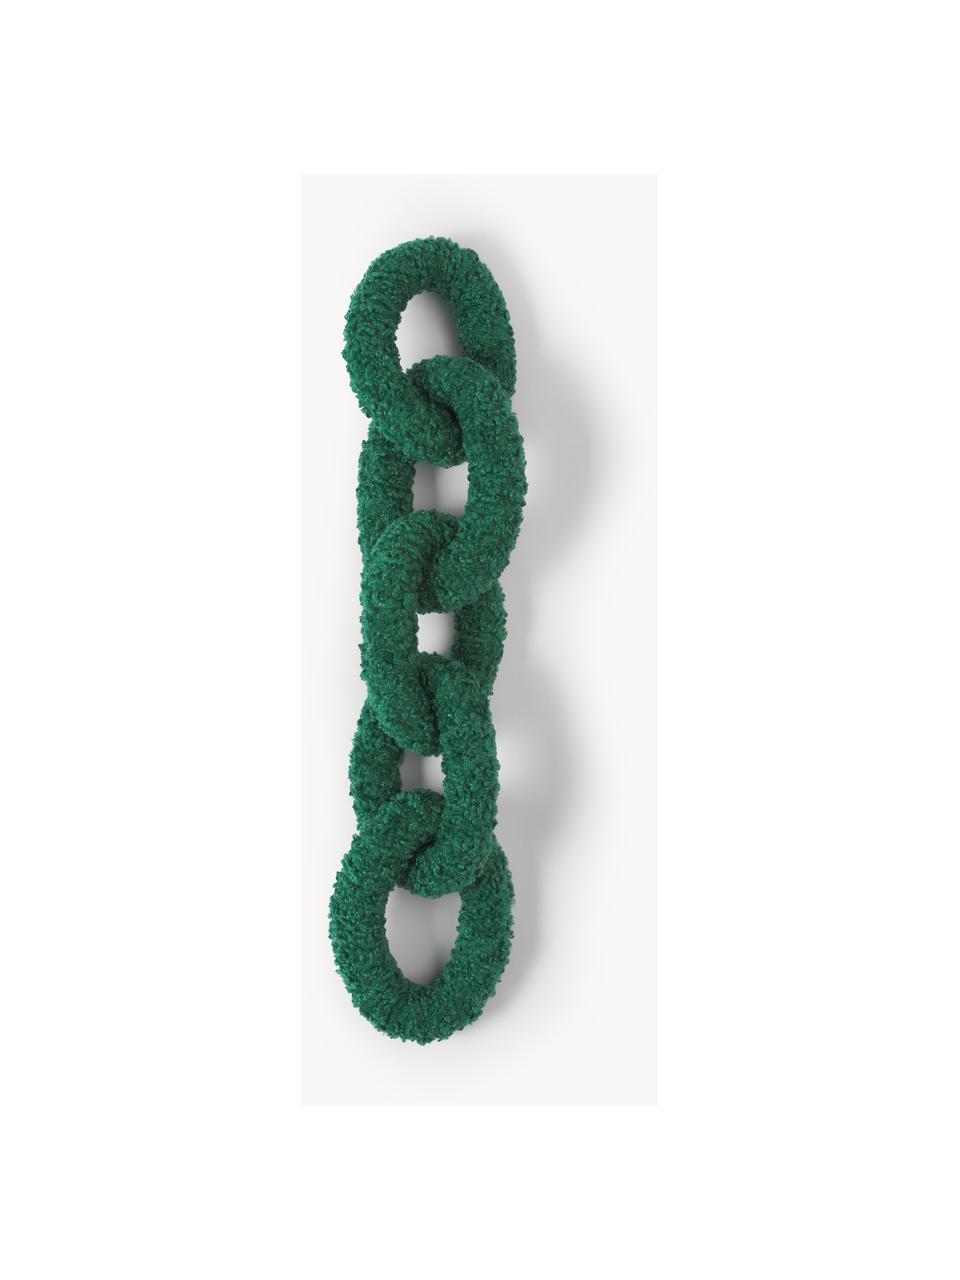 Plyšový polštář Chain Dotty, 100 % polyester (plyšový kožíšek), Tmavě zelená, Š 60 cm, H 20 cm